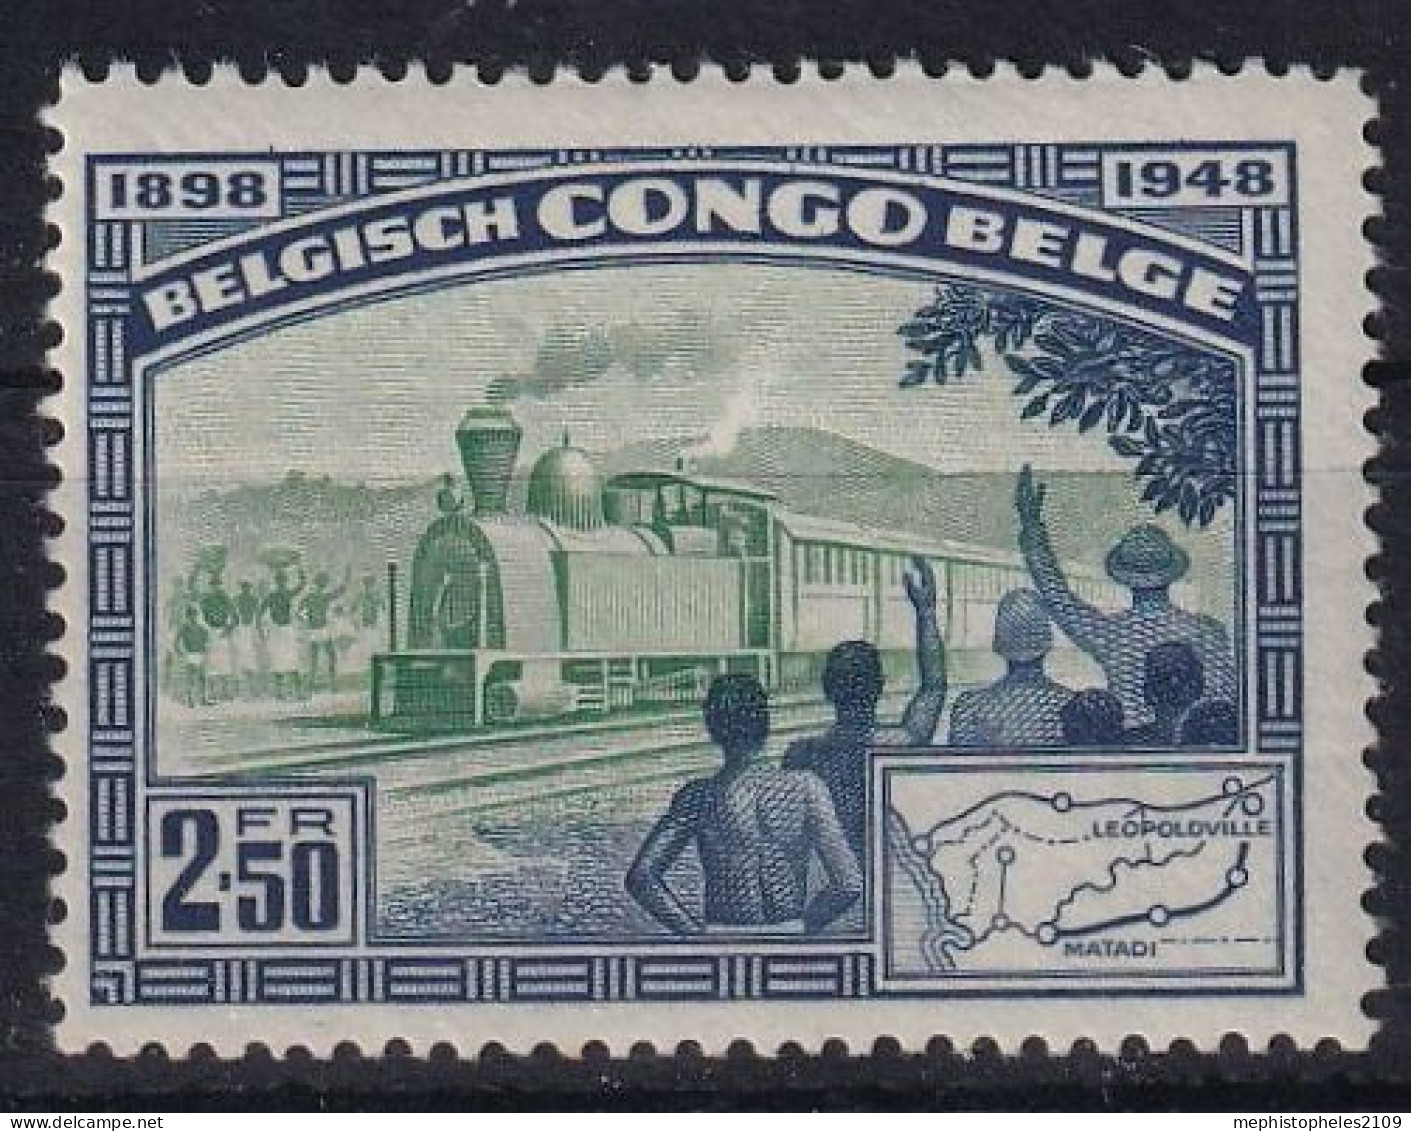 BELGISCH-CONGO 1948 - MLH - Mi 289 - Unused Stamps